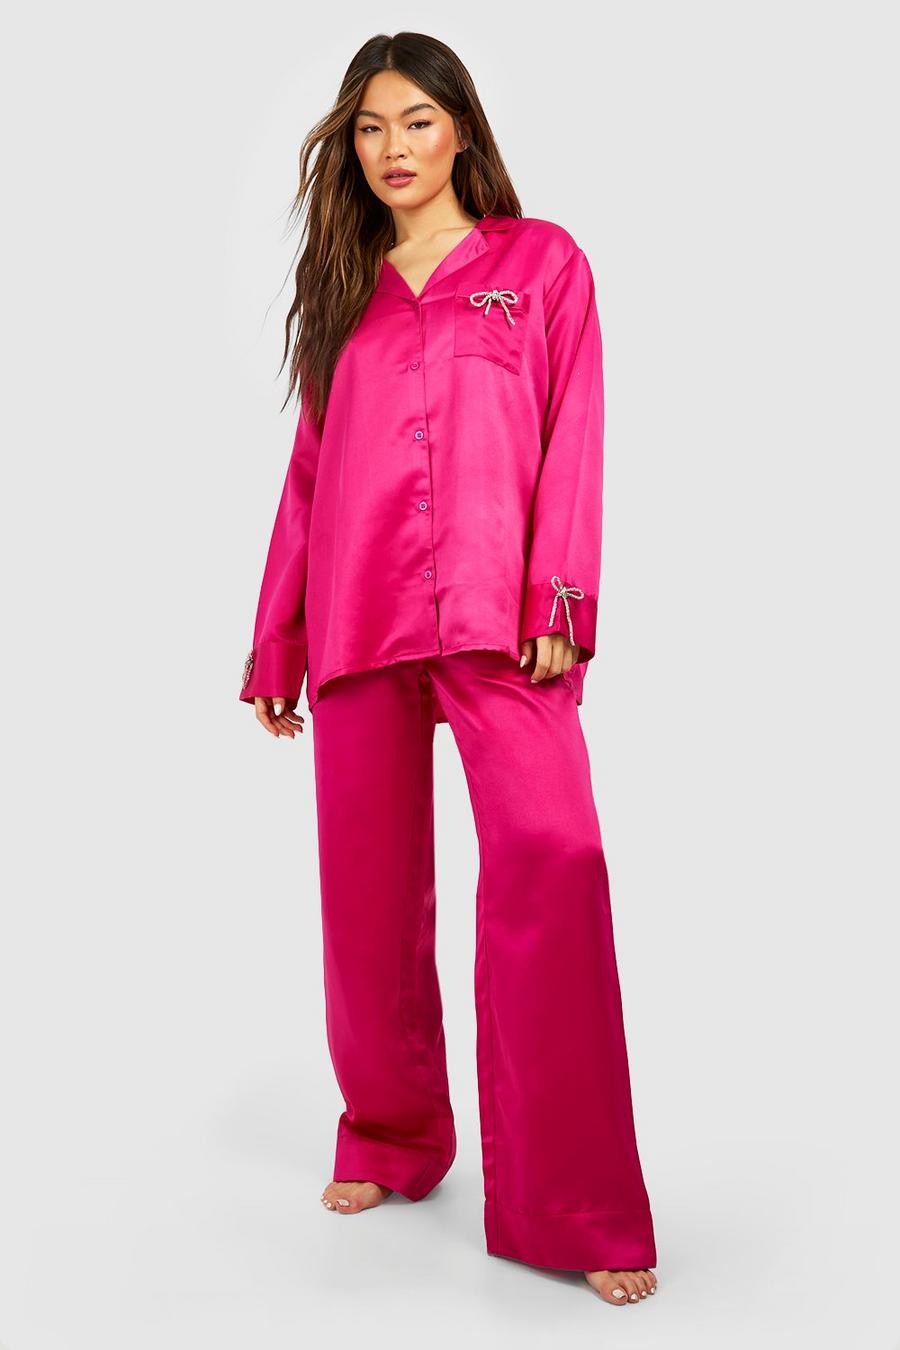 Pijama Premium de pernera ancha y camisa con lazo de incrustaciones, Hot pink